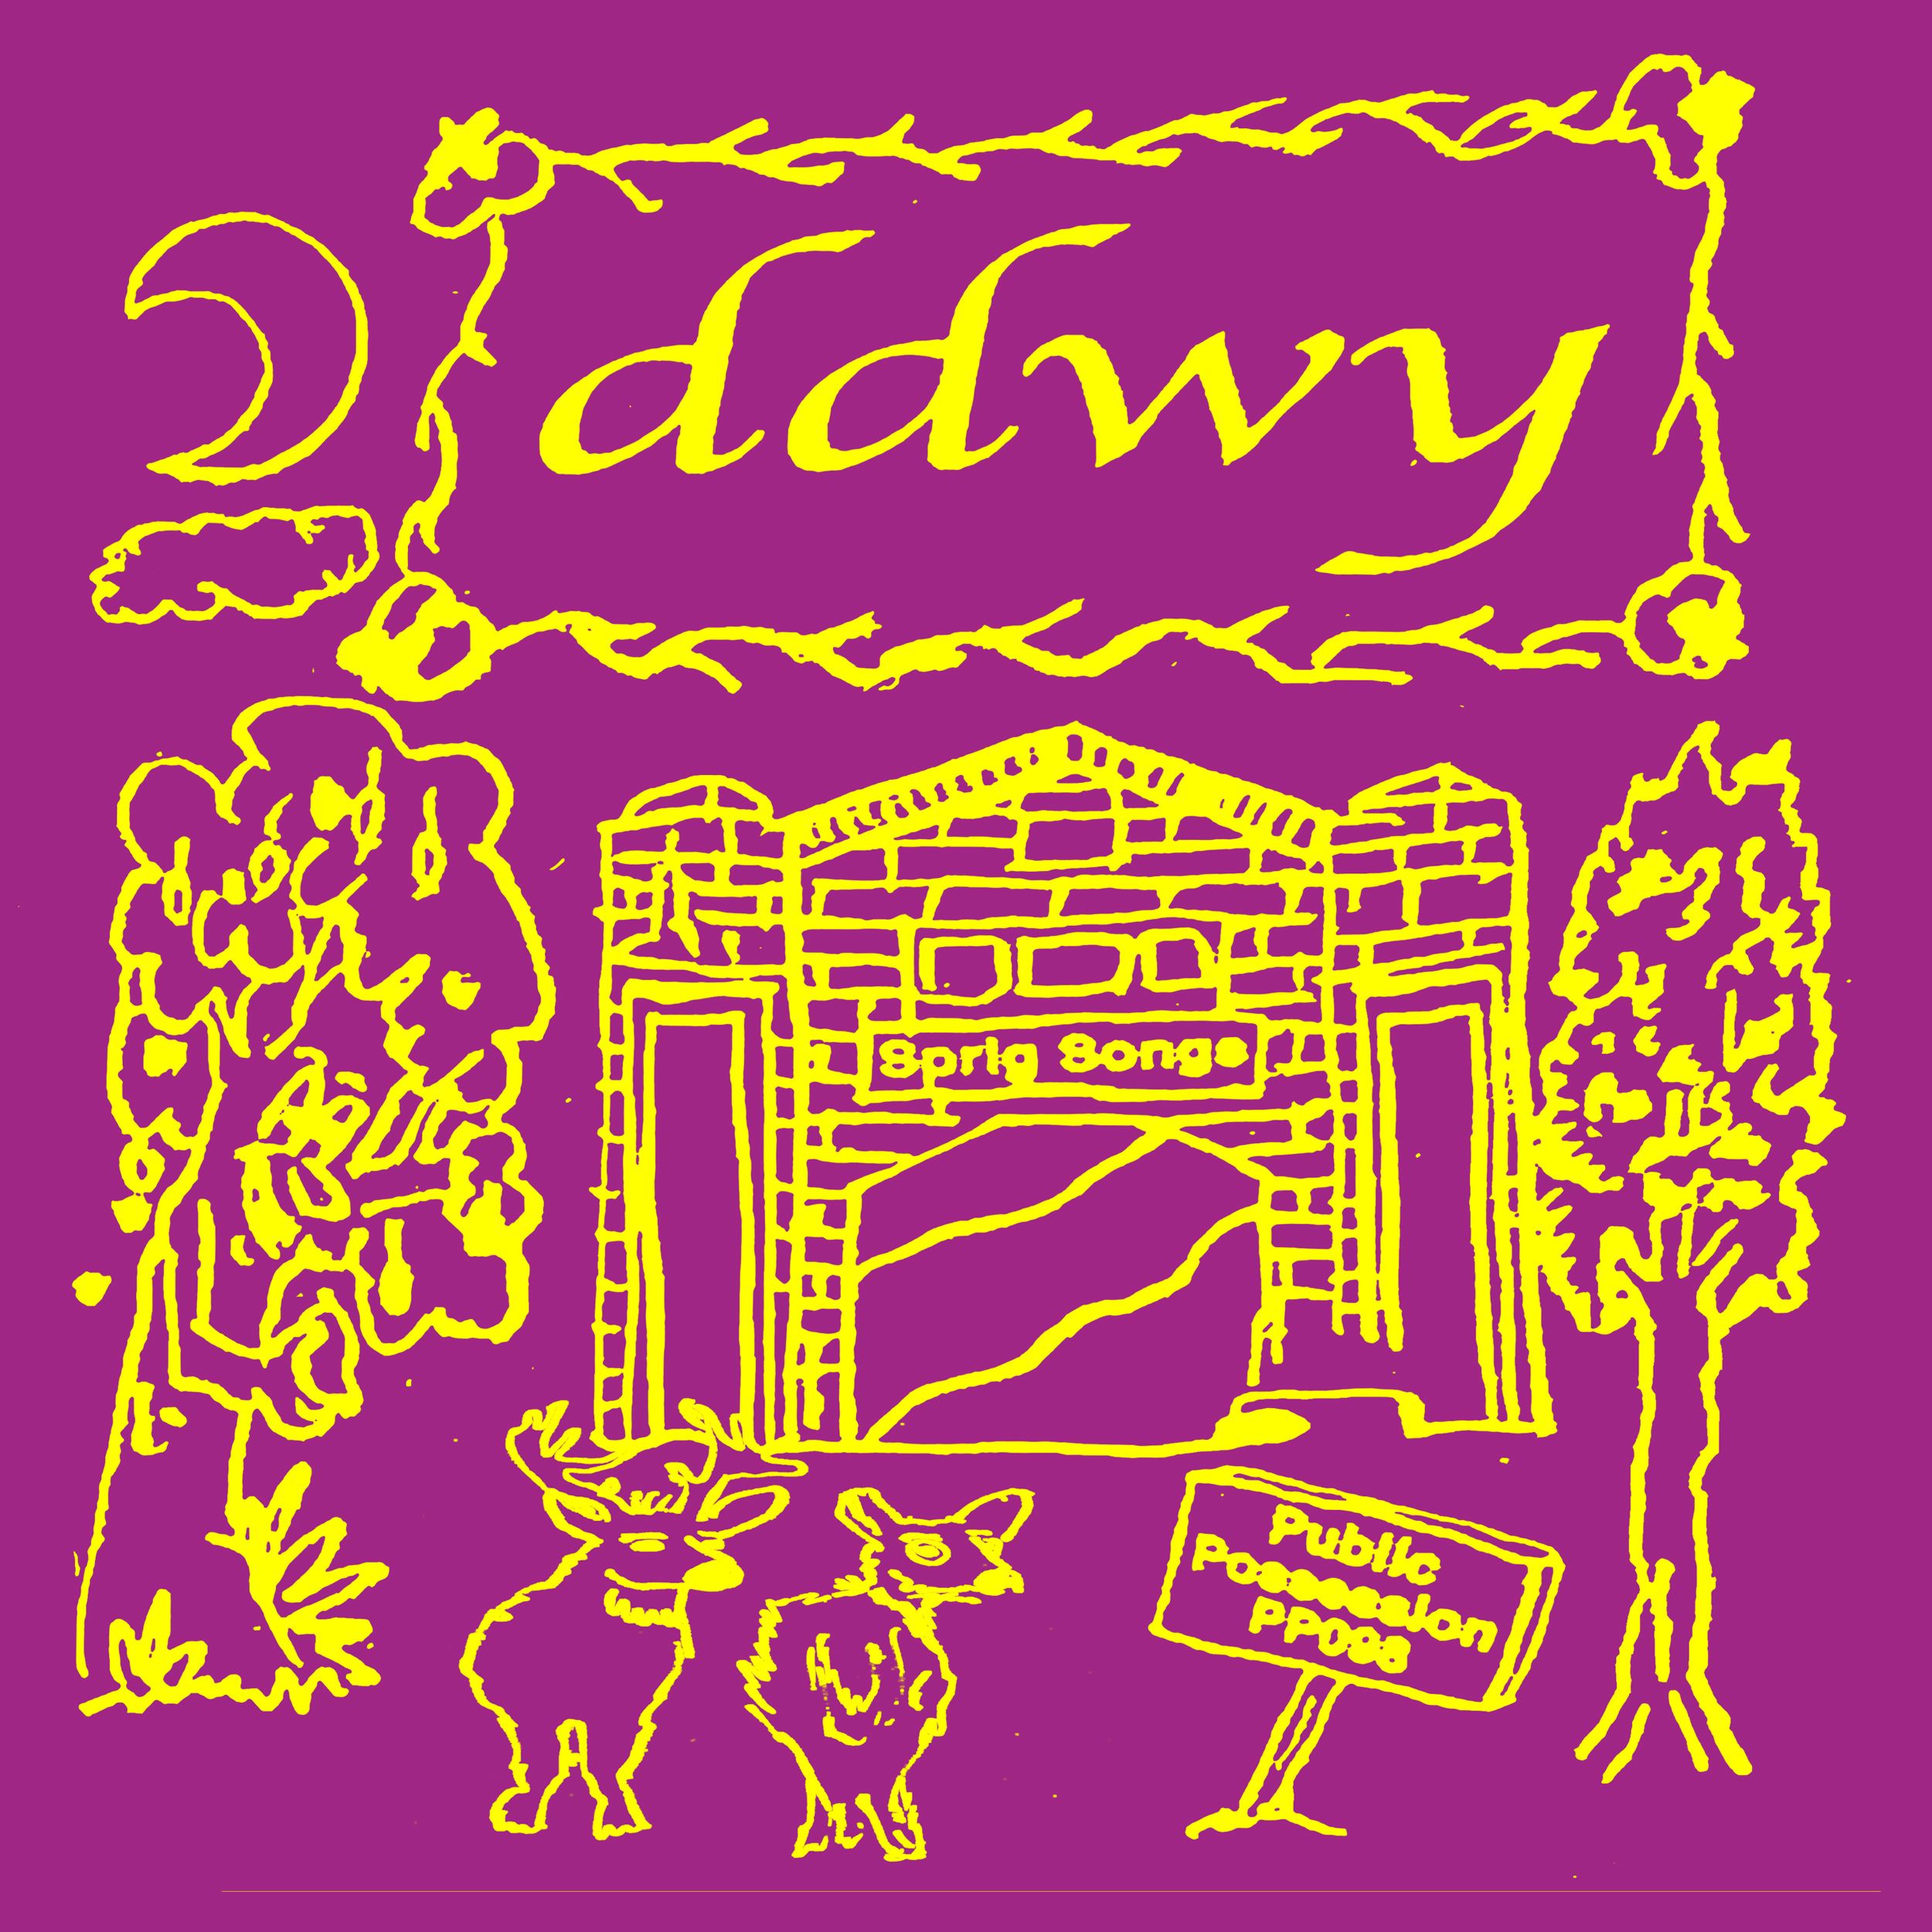 ddwy – Sprig Songs